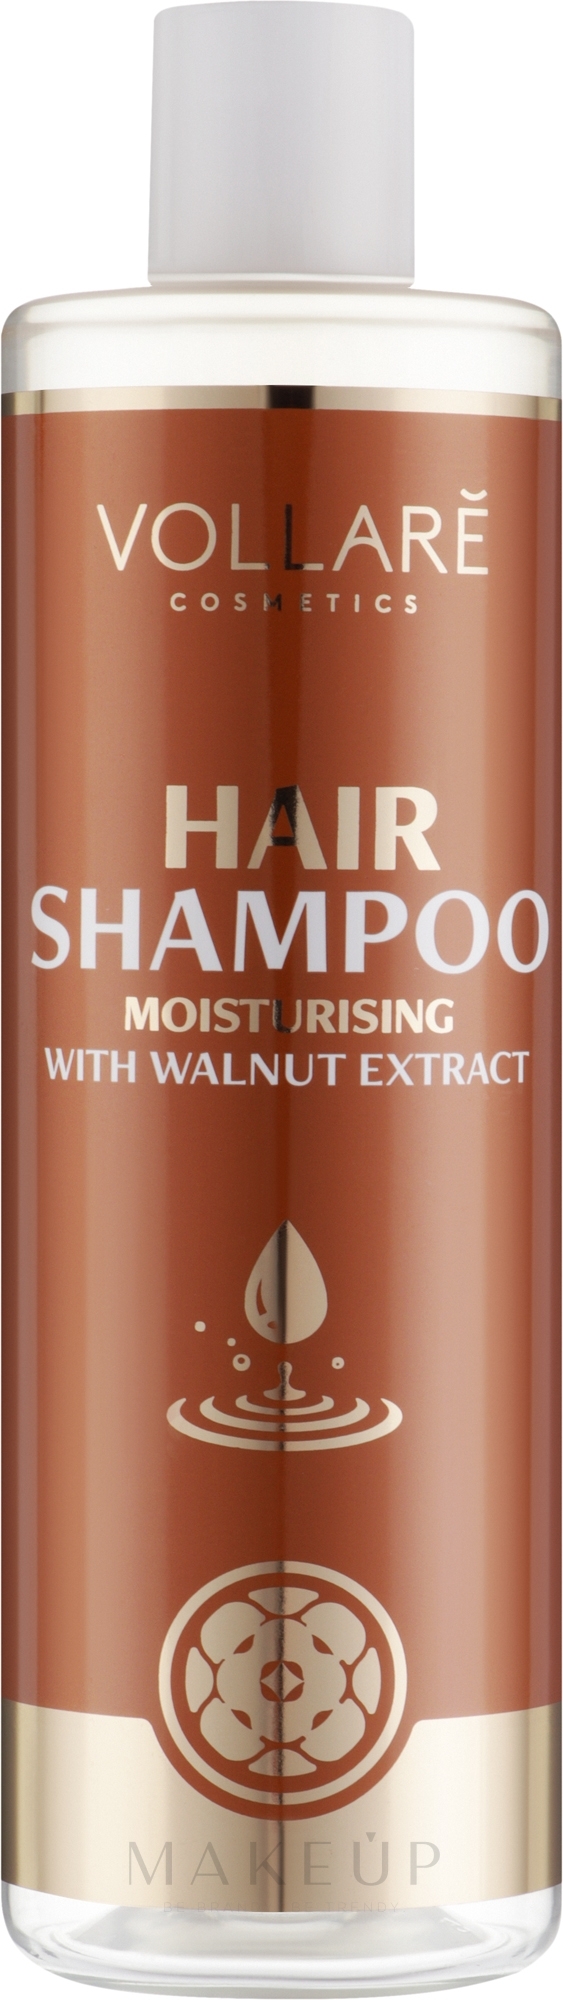 Feuchtigkeitsspendendes Haarshampoo mit Walnussextrakt - Vollare Cosmetics Hair Shampoo Moisturising With Walnut Extract — Bild 400 ml